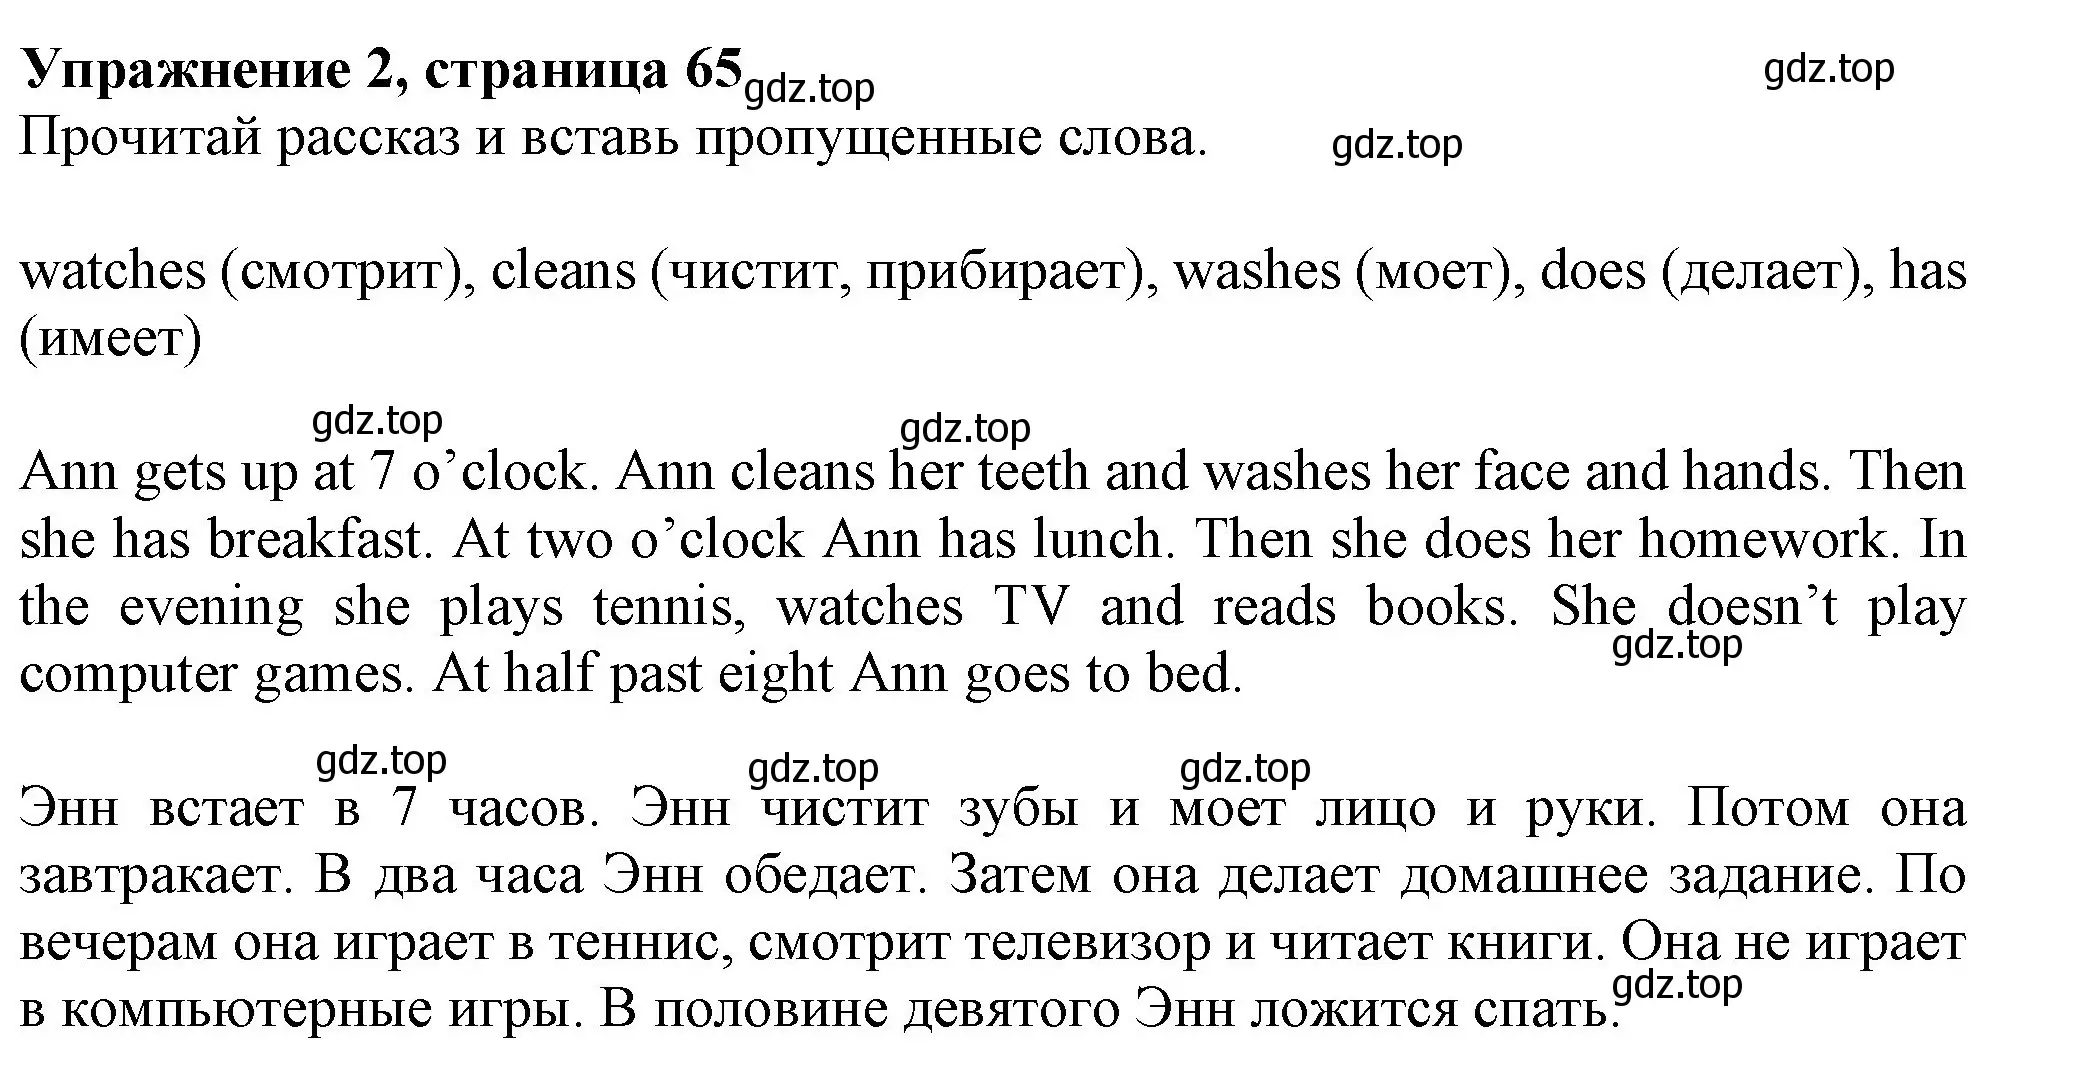 Решение номер 2 (страница 65) гдз по английскому языку 3 класс Биболетова, Денисенко, рабочая тетрадь